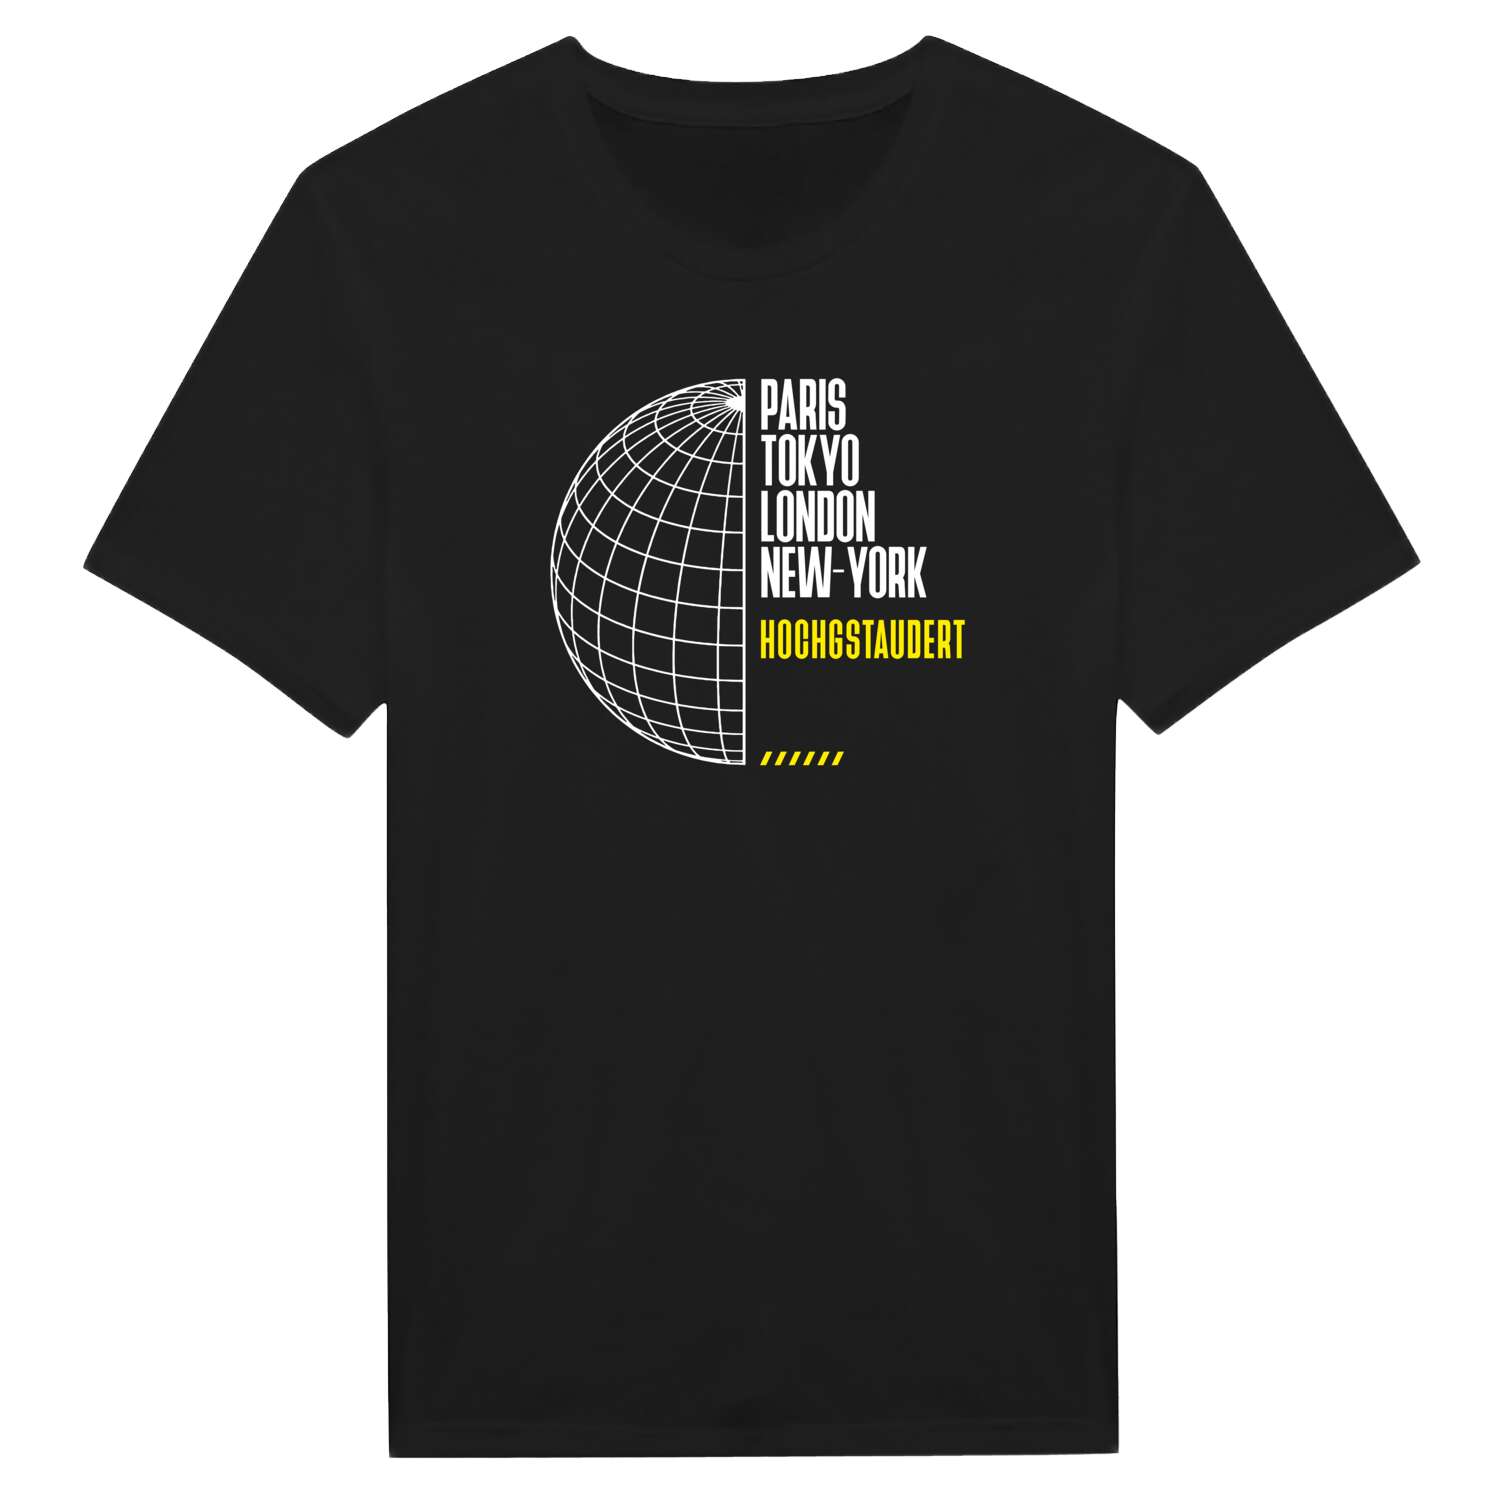 Hochgstaudert T-Shirt »Paris Tokyo London«